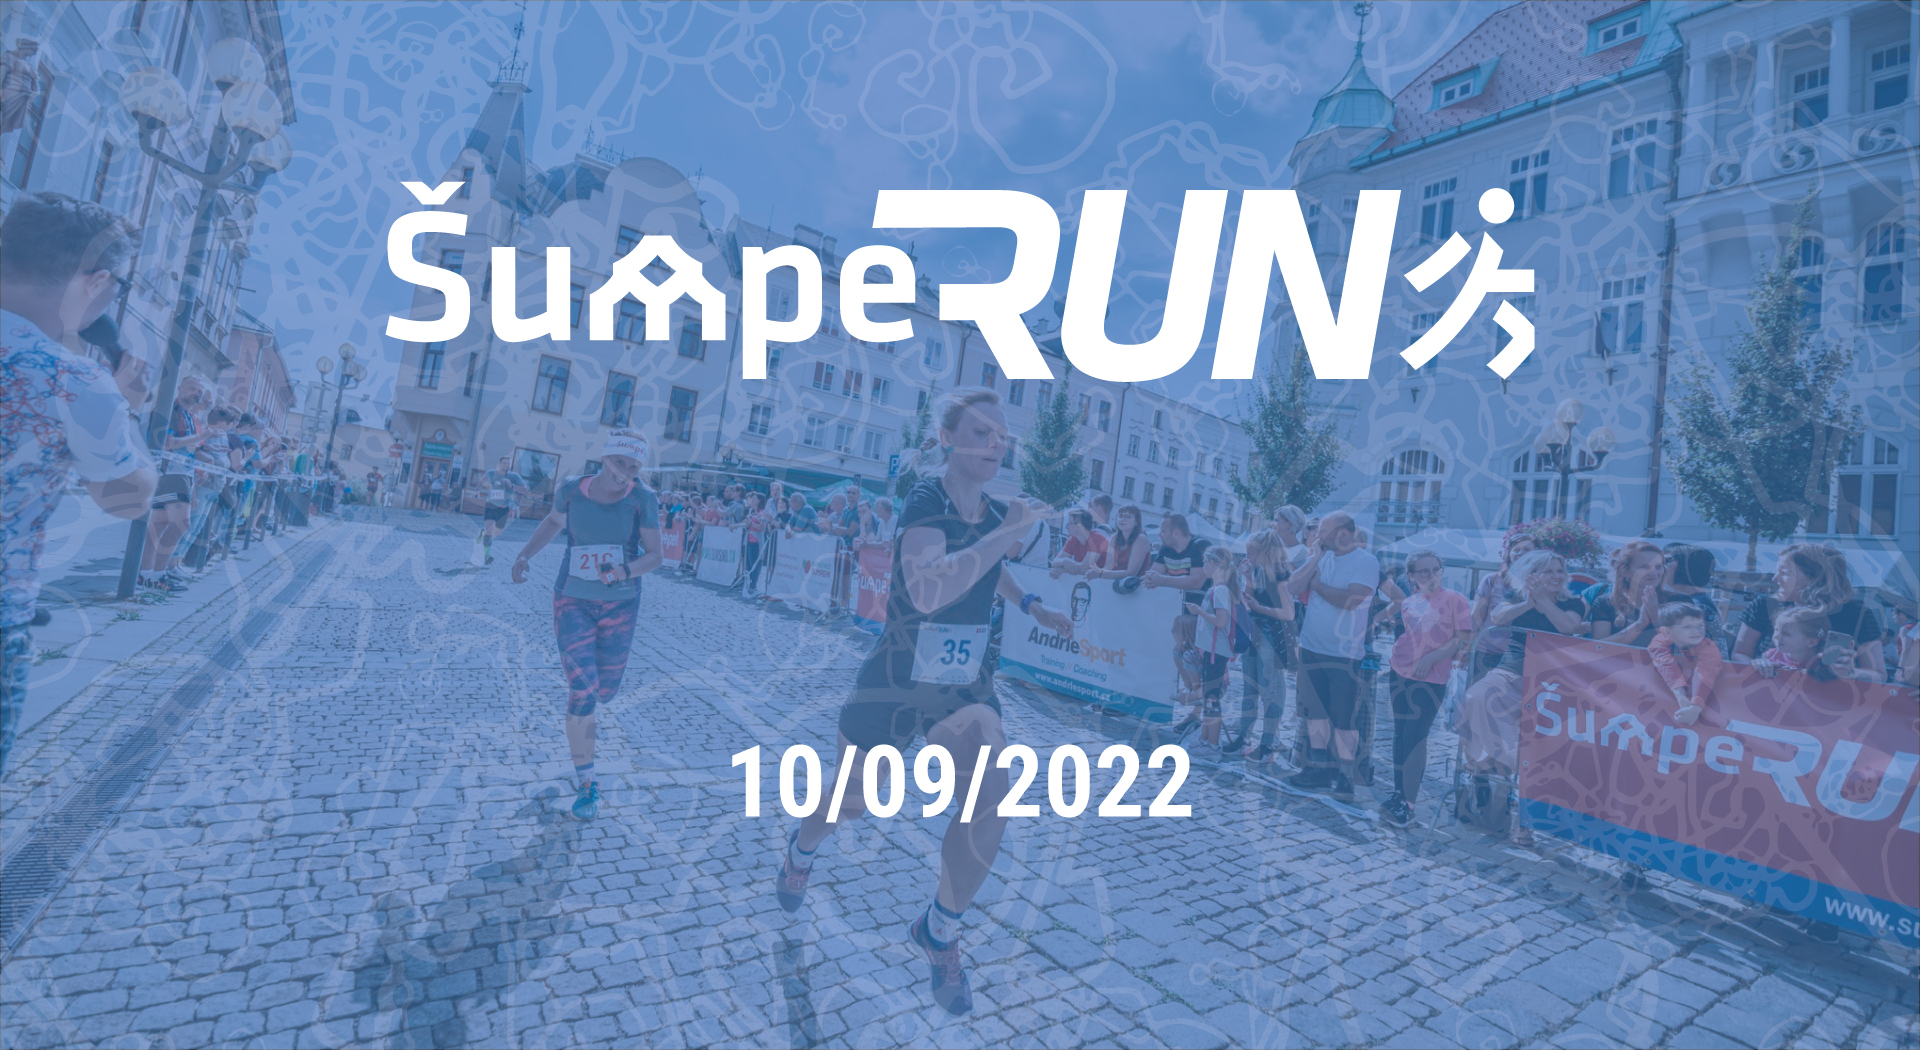 Čtvrtý ŠumpeRUN bude v sobotu 10. září 2022